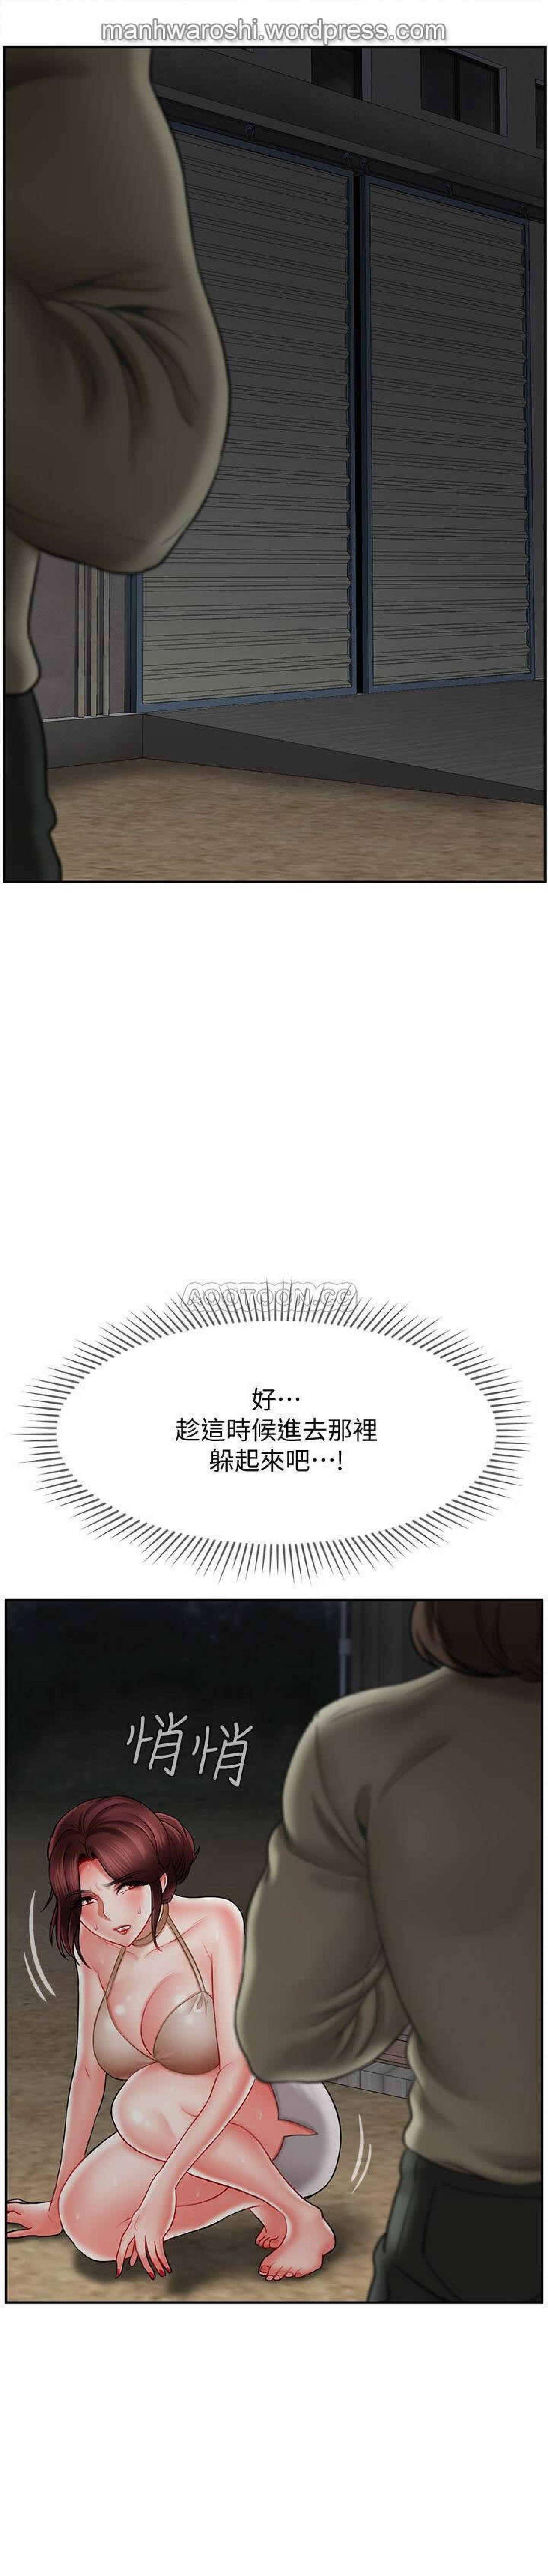 坏老师 | PHYSICAL CLASSROOM 11 [Chinese] Manhwa 12